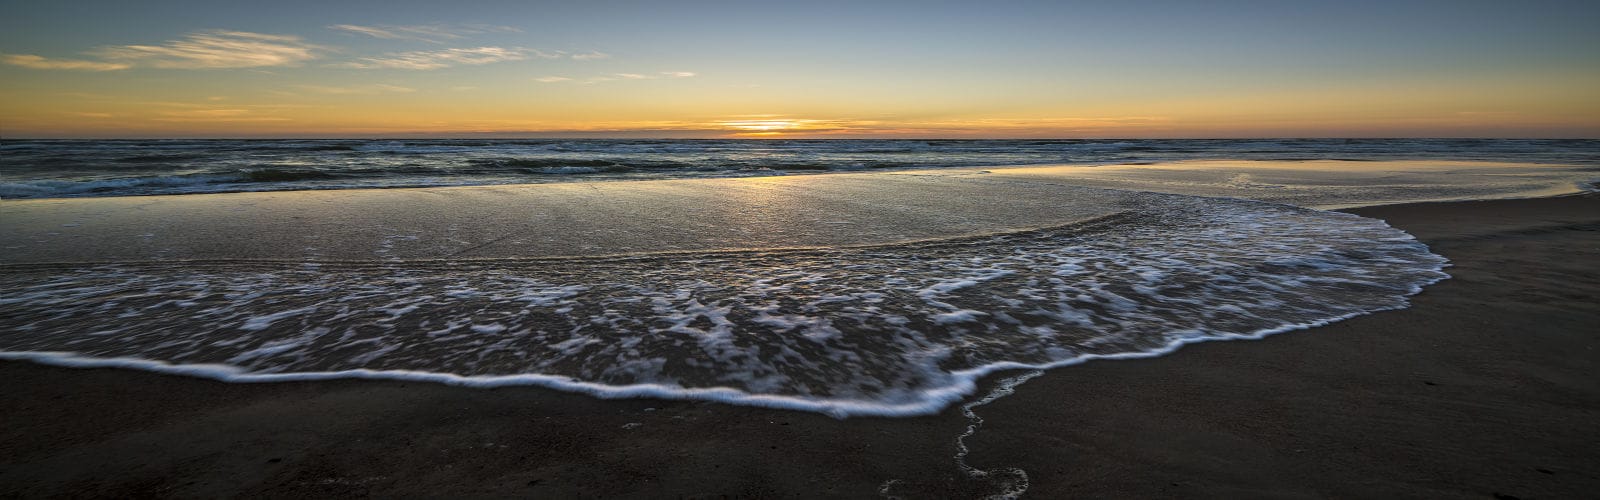 lituanie vilnius ocean littoral plage soleil couchant ciel voyage sur mesure circuit accompagne o-nord